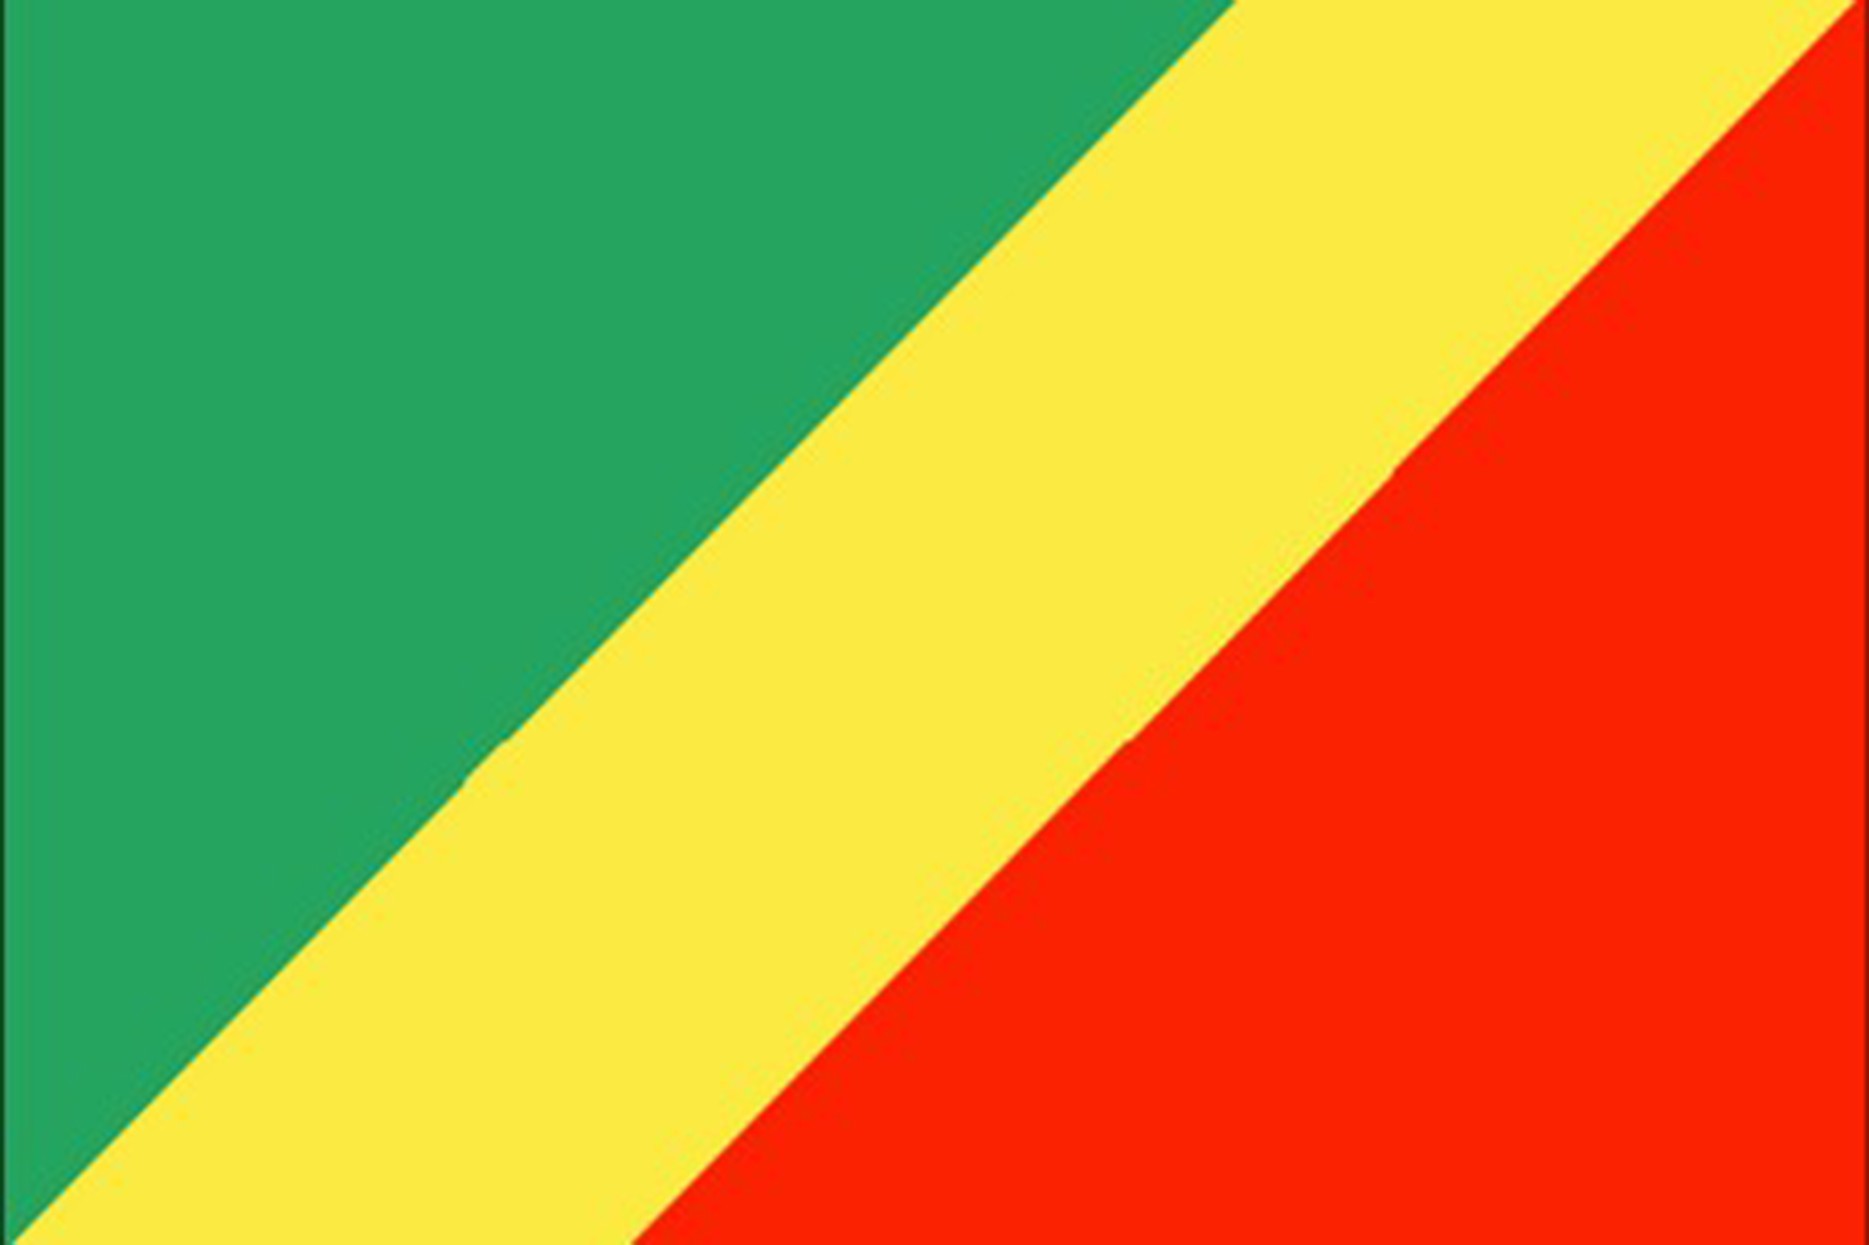 Republic of Congo Document Legalization Authentication Services